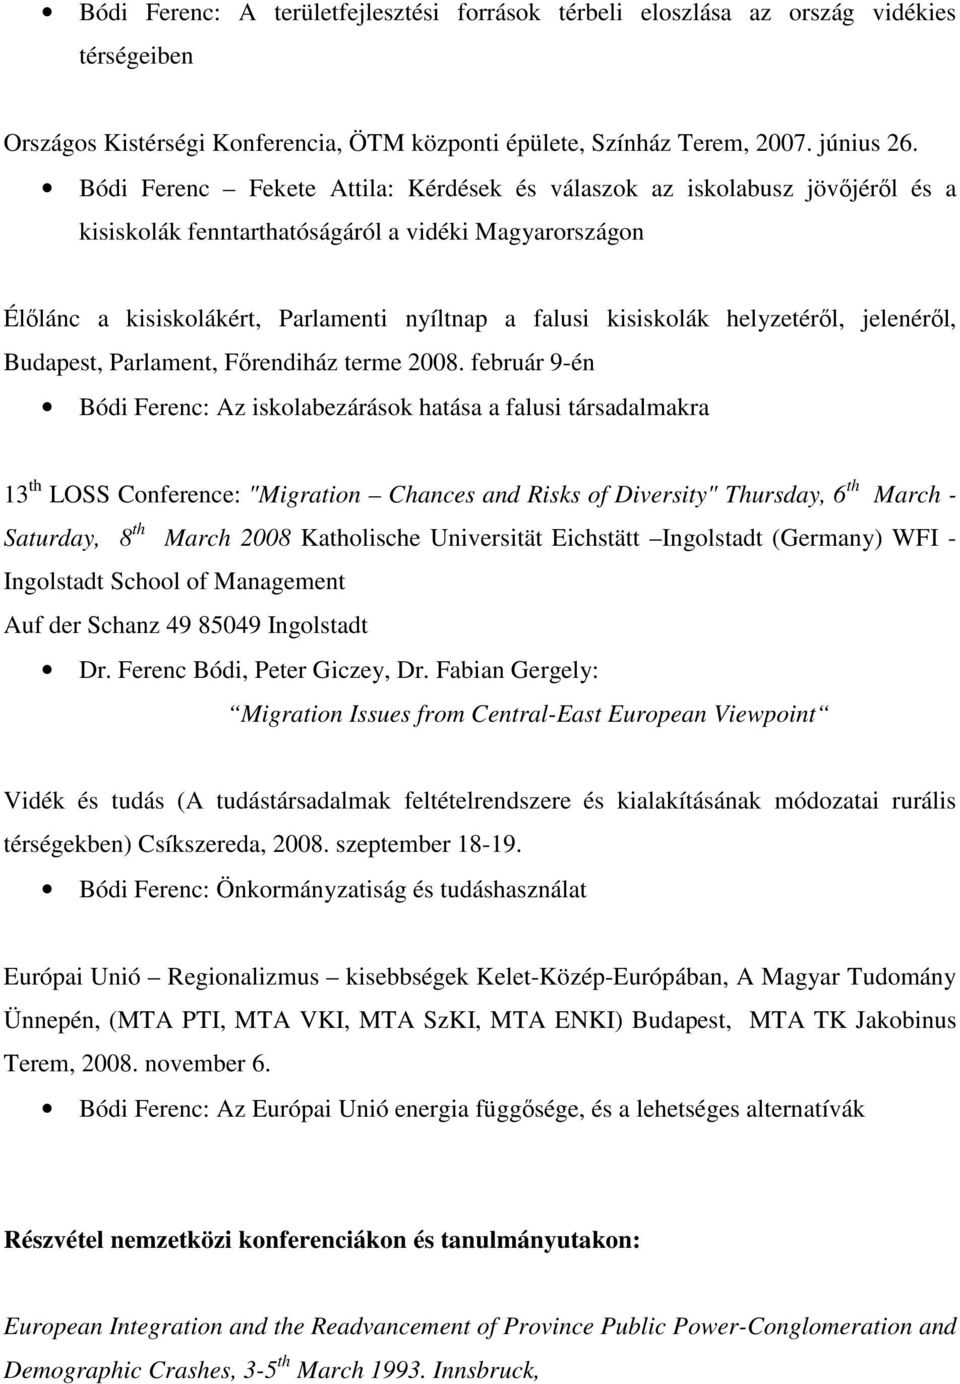 Tudományos életrajz Dr. Bódi Ferenc - PDF Ingyenes letöltés